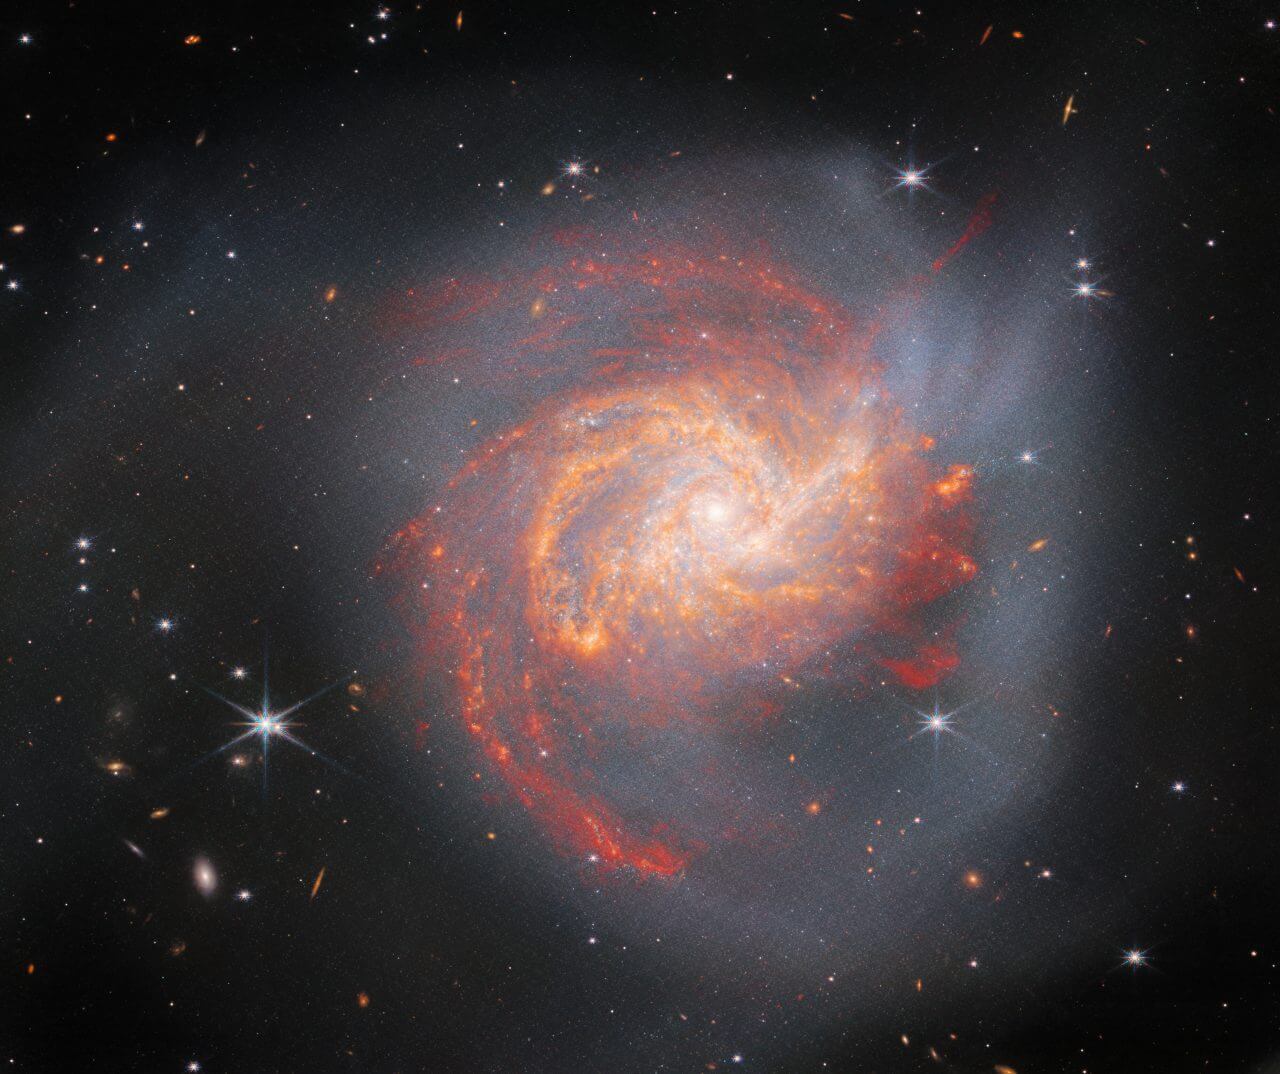 ウェッブ宇宙望遠鏡が撮影した特異銀河「NGC 3256」【今日の宇宙画像】